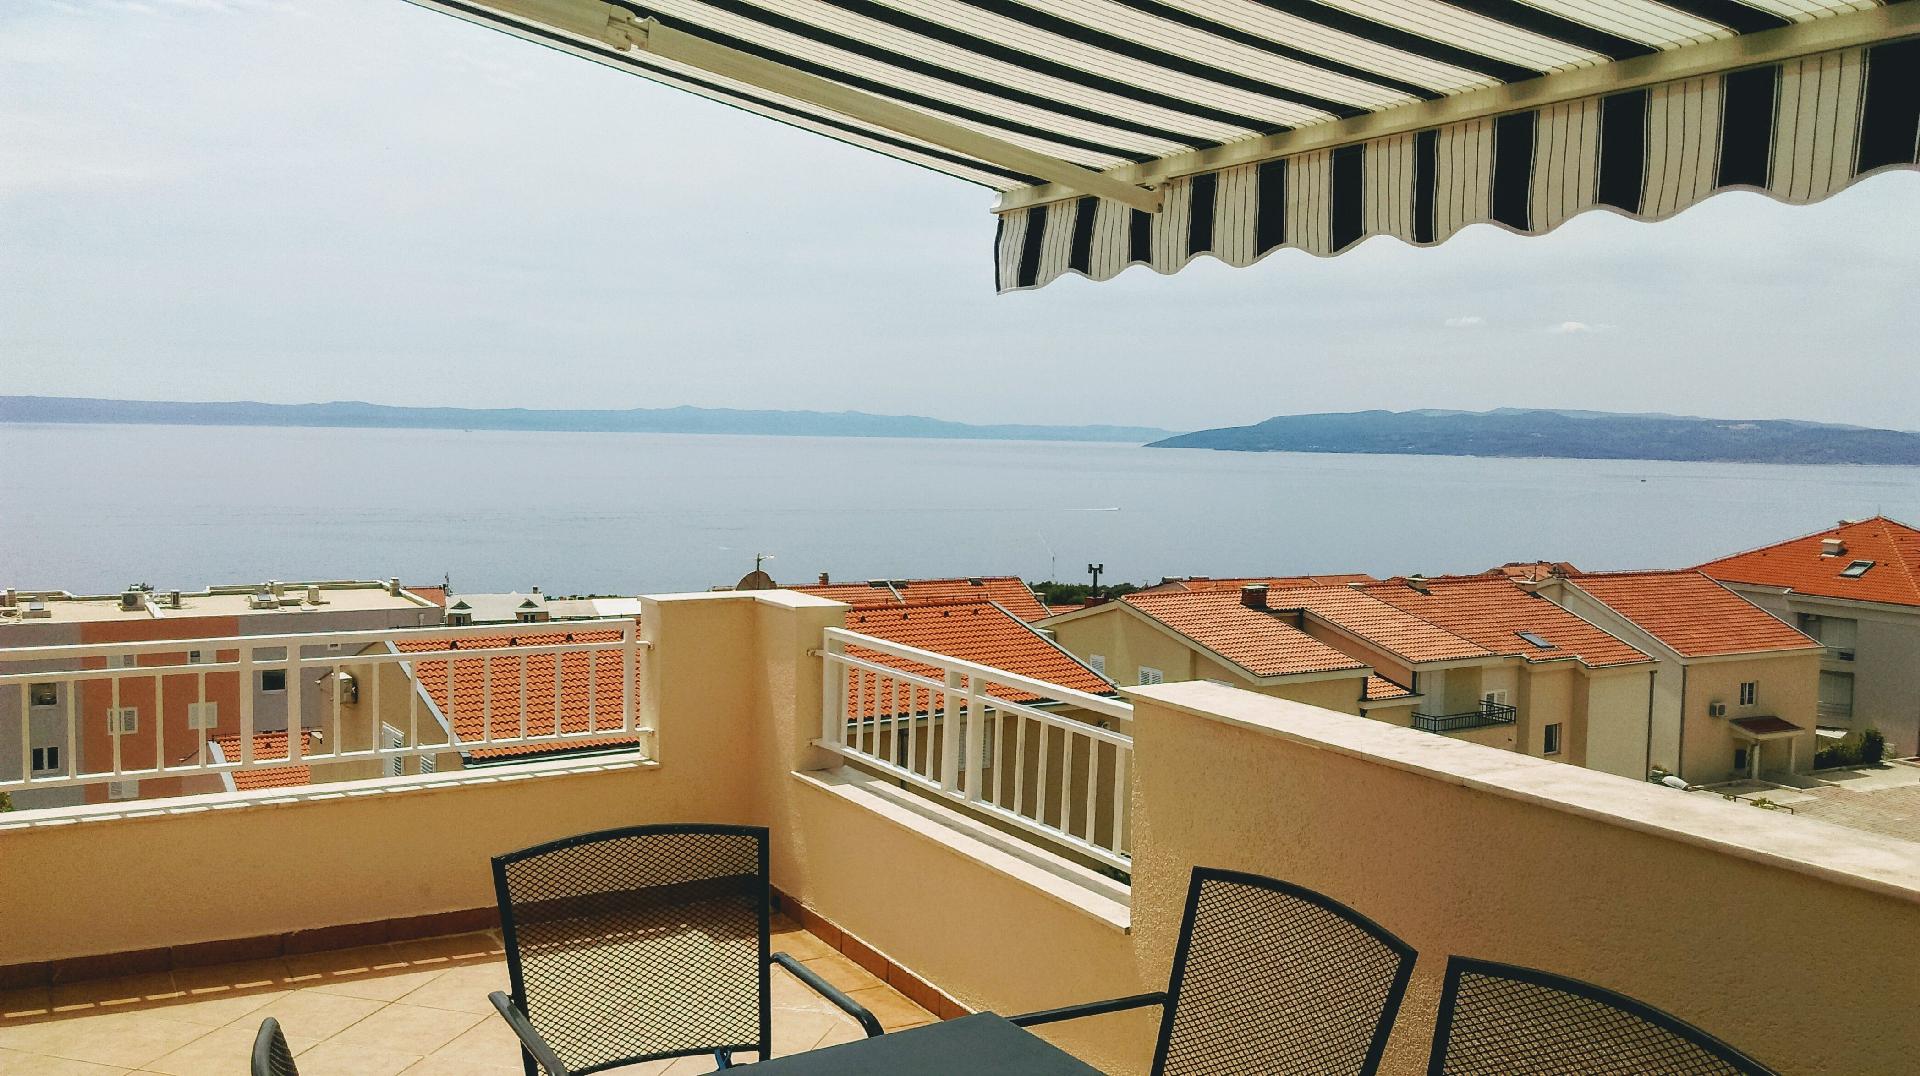 Geräumige Ferienwohnung mit zwei Balkonen, in Ferienwohnung in Dalmatien